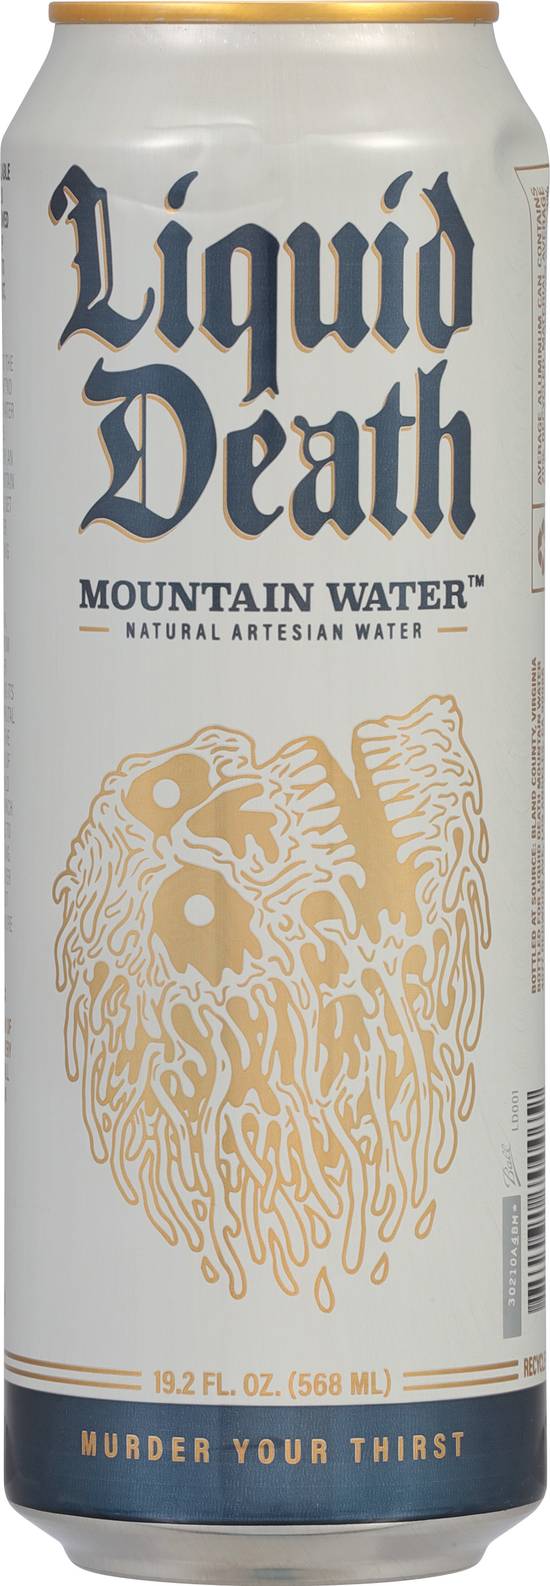 Liquid Death Mountain Water (19.2 fl oz)